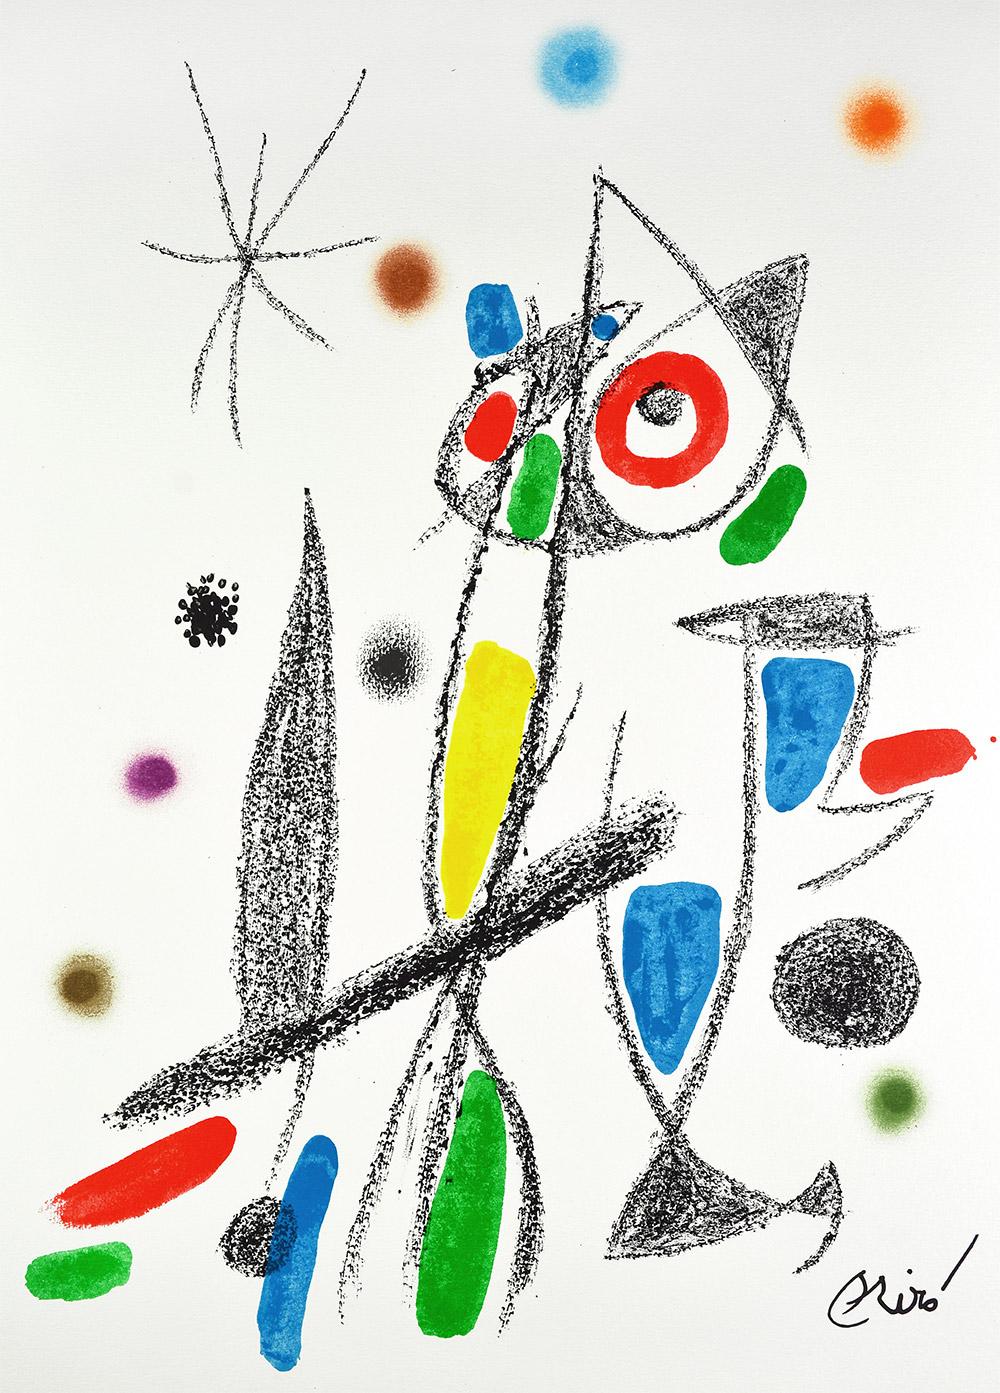 Set of 8 lithographs including:

Maravillas con variaciones acrósticas en el jardín de Miró I
Maravillas con variaciones acrósticas en el jardín de Miró II
Maravillas con variaciones acrósticas en el jardín de Miró VI
Maravillas con variaciones